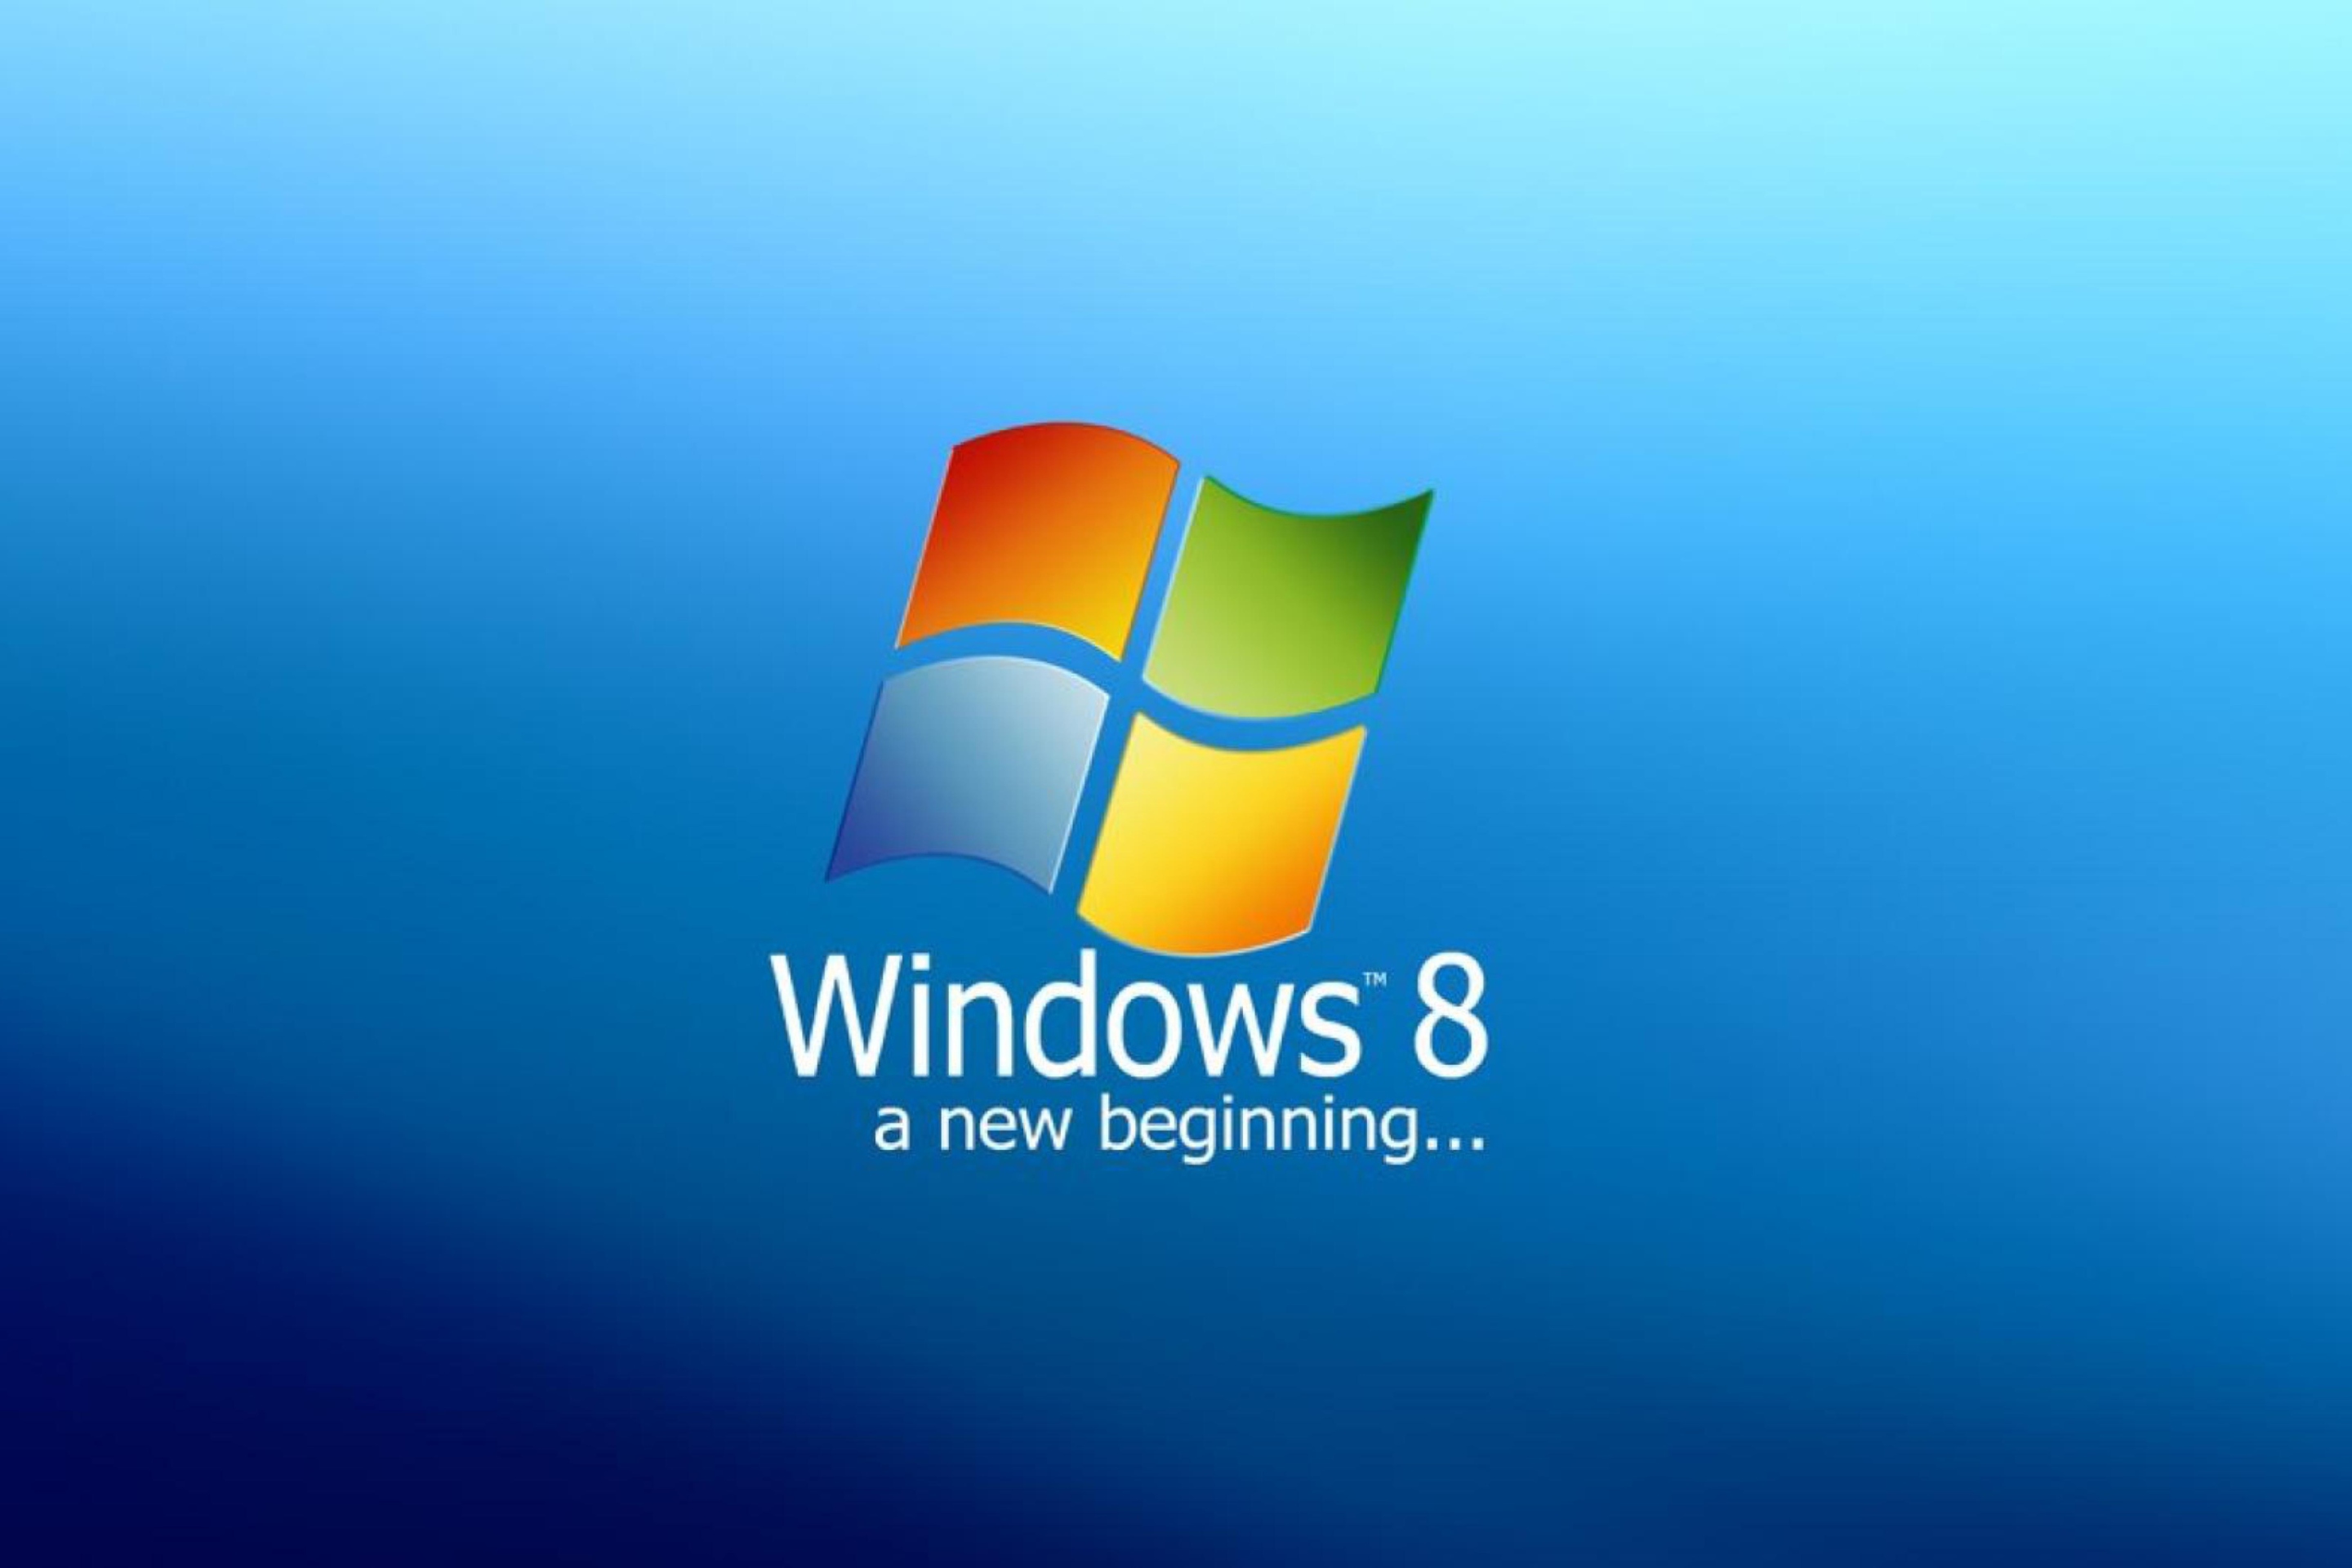 A New Beginning Windows 8 wallpaper 2880x1920